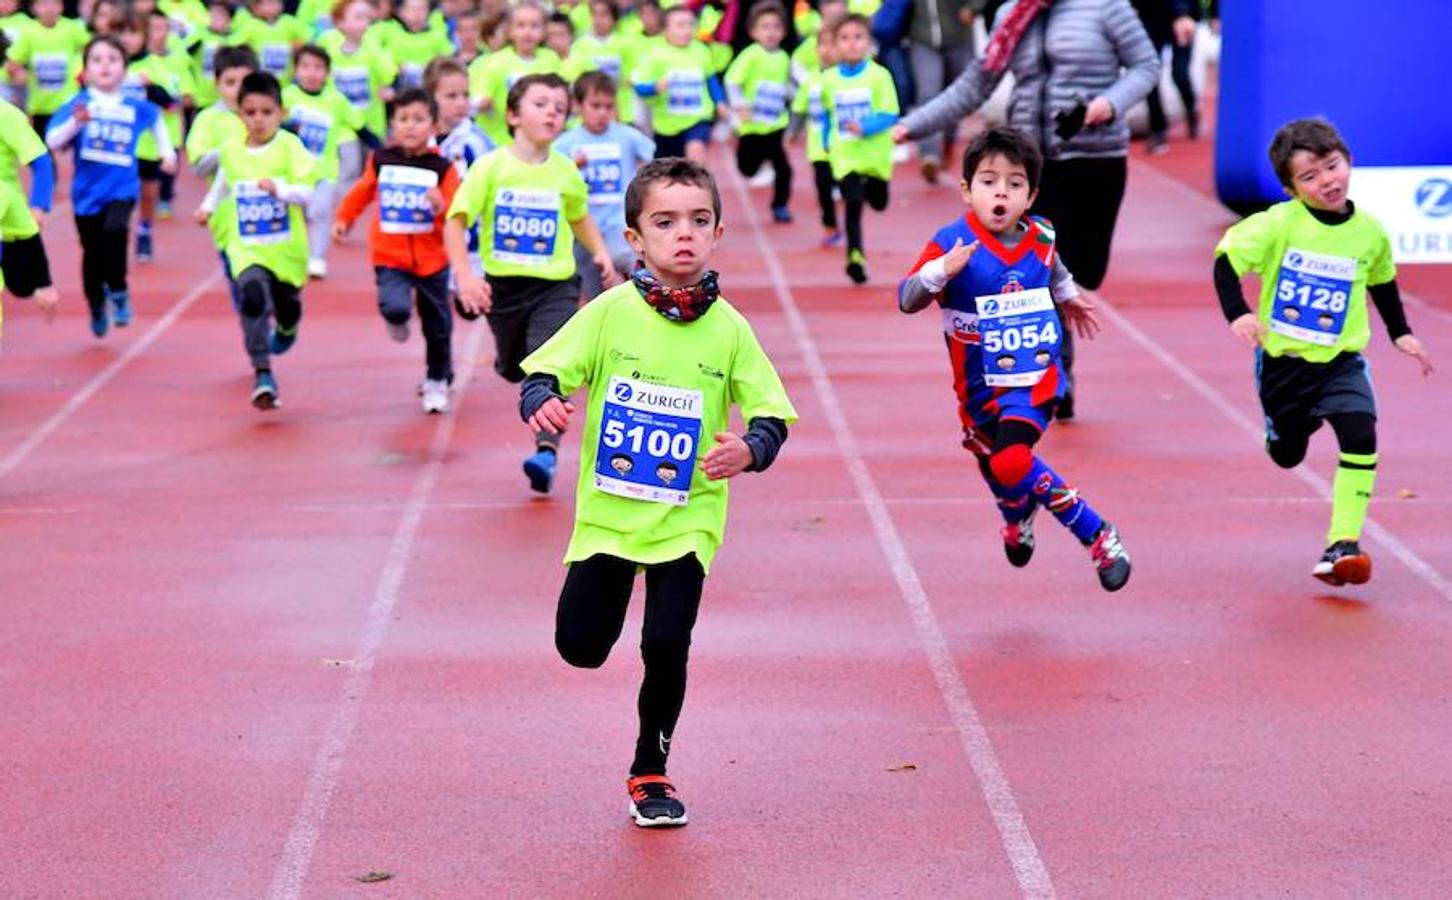 1.200 korrikalaris de 3 a 13 años toman el Miniestadio de Anoeta con motivo del Maratoi Txiki Festa